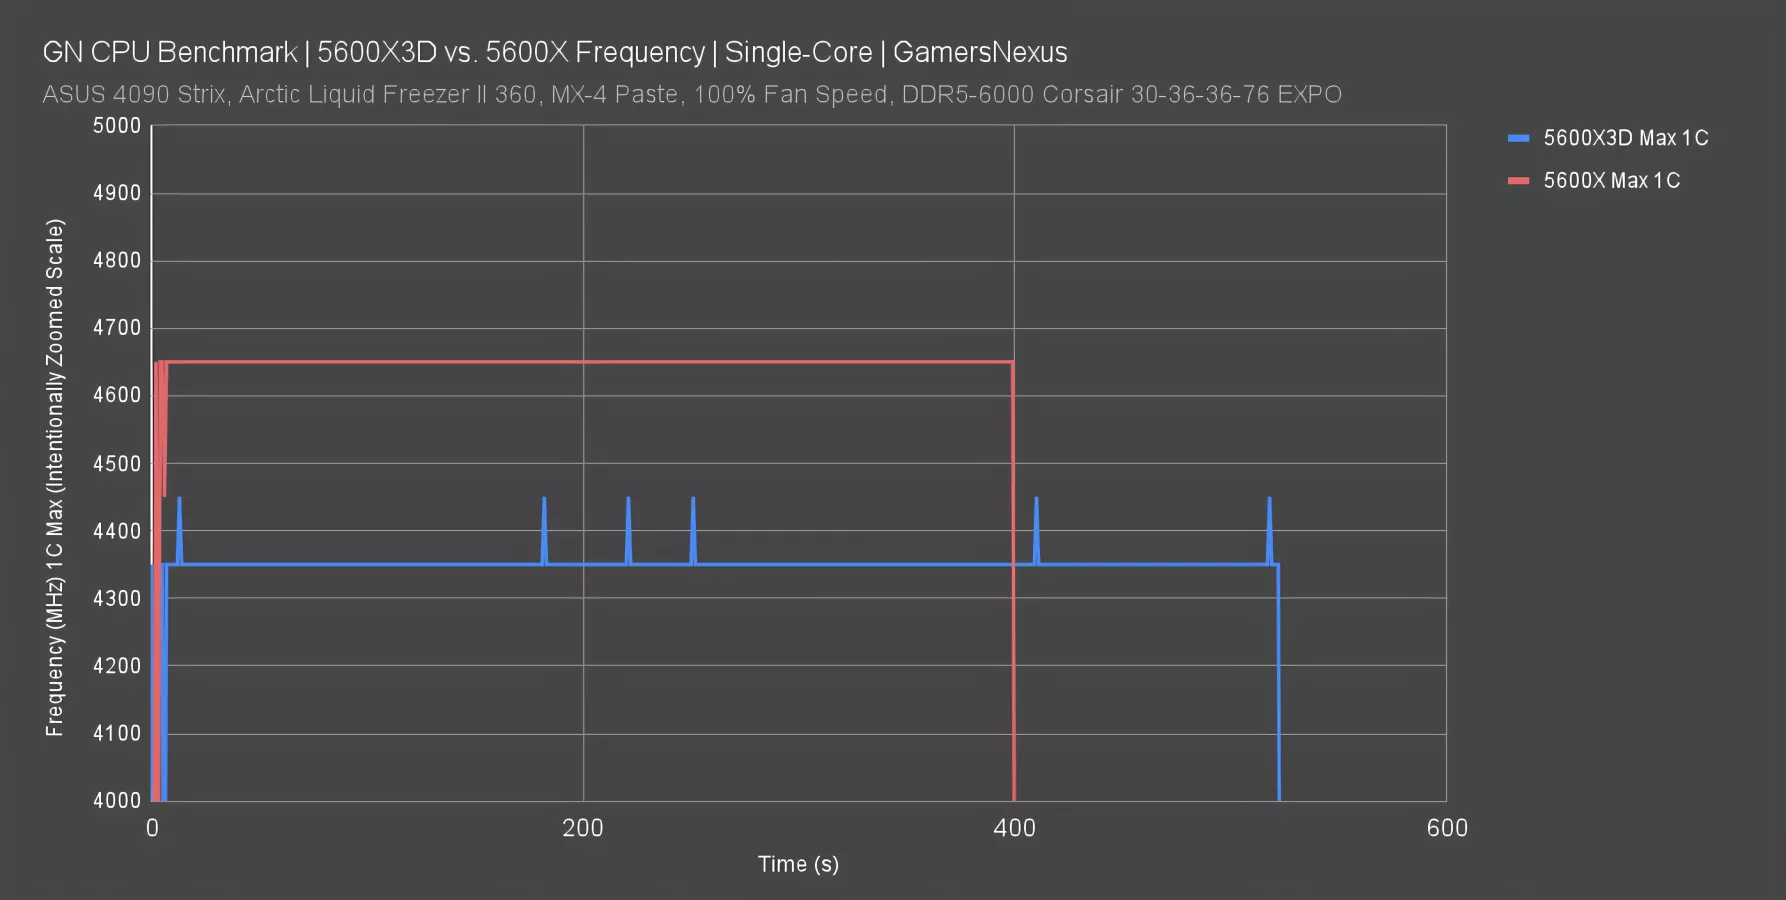 AMD Ryzen 5 5600X3D review: an unexpected triumph that we should